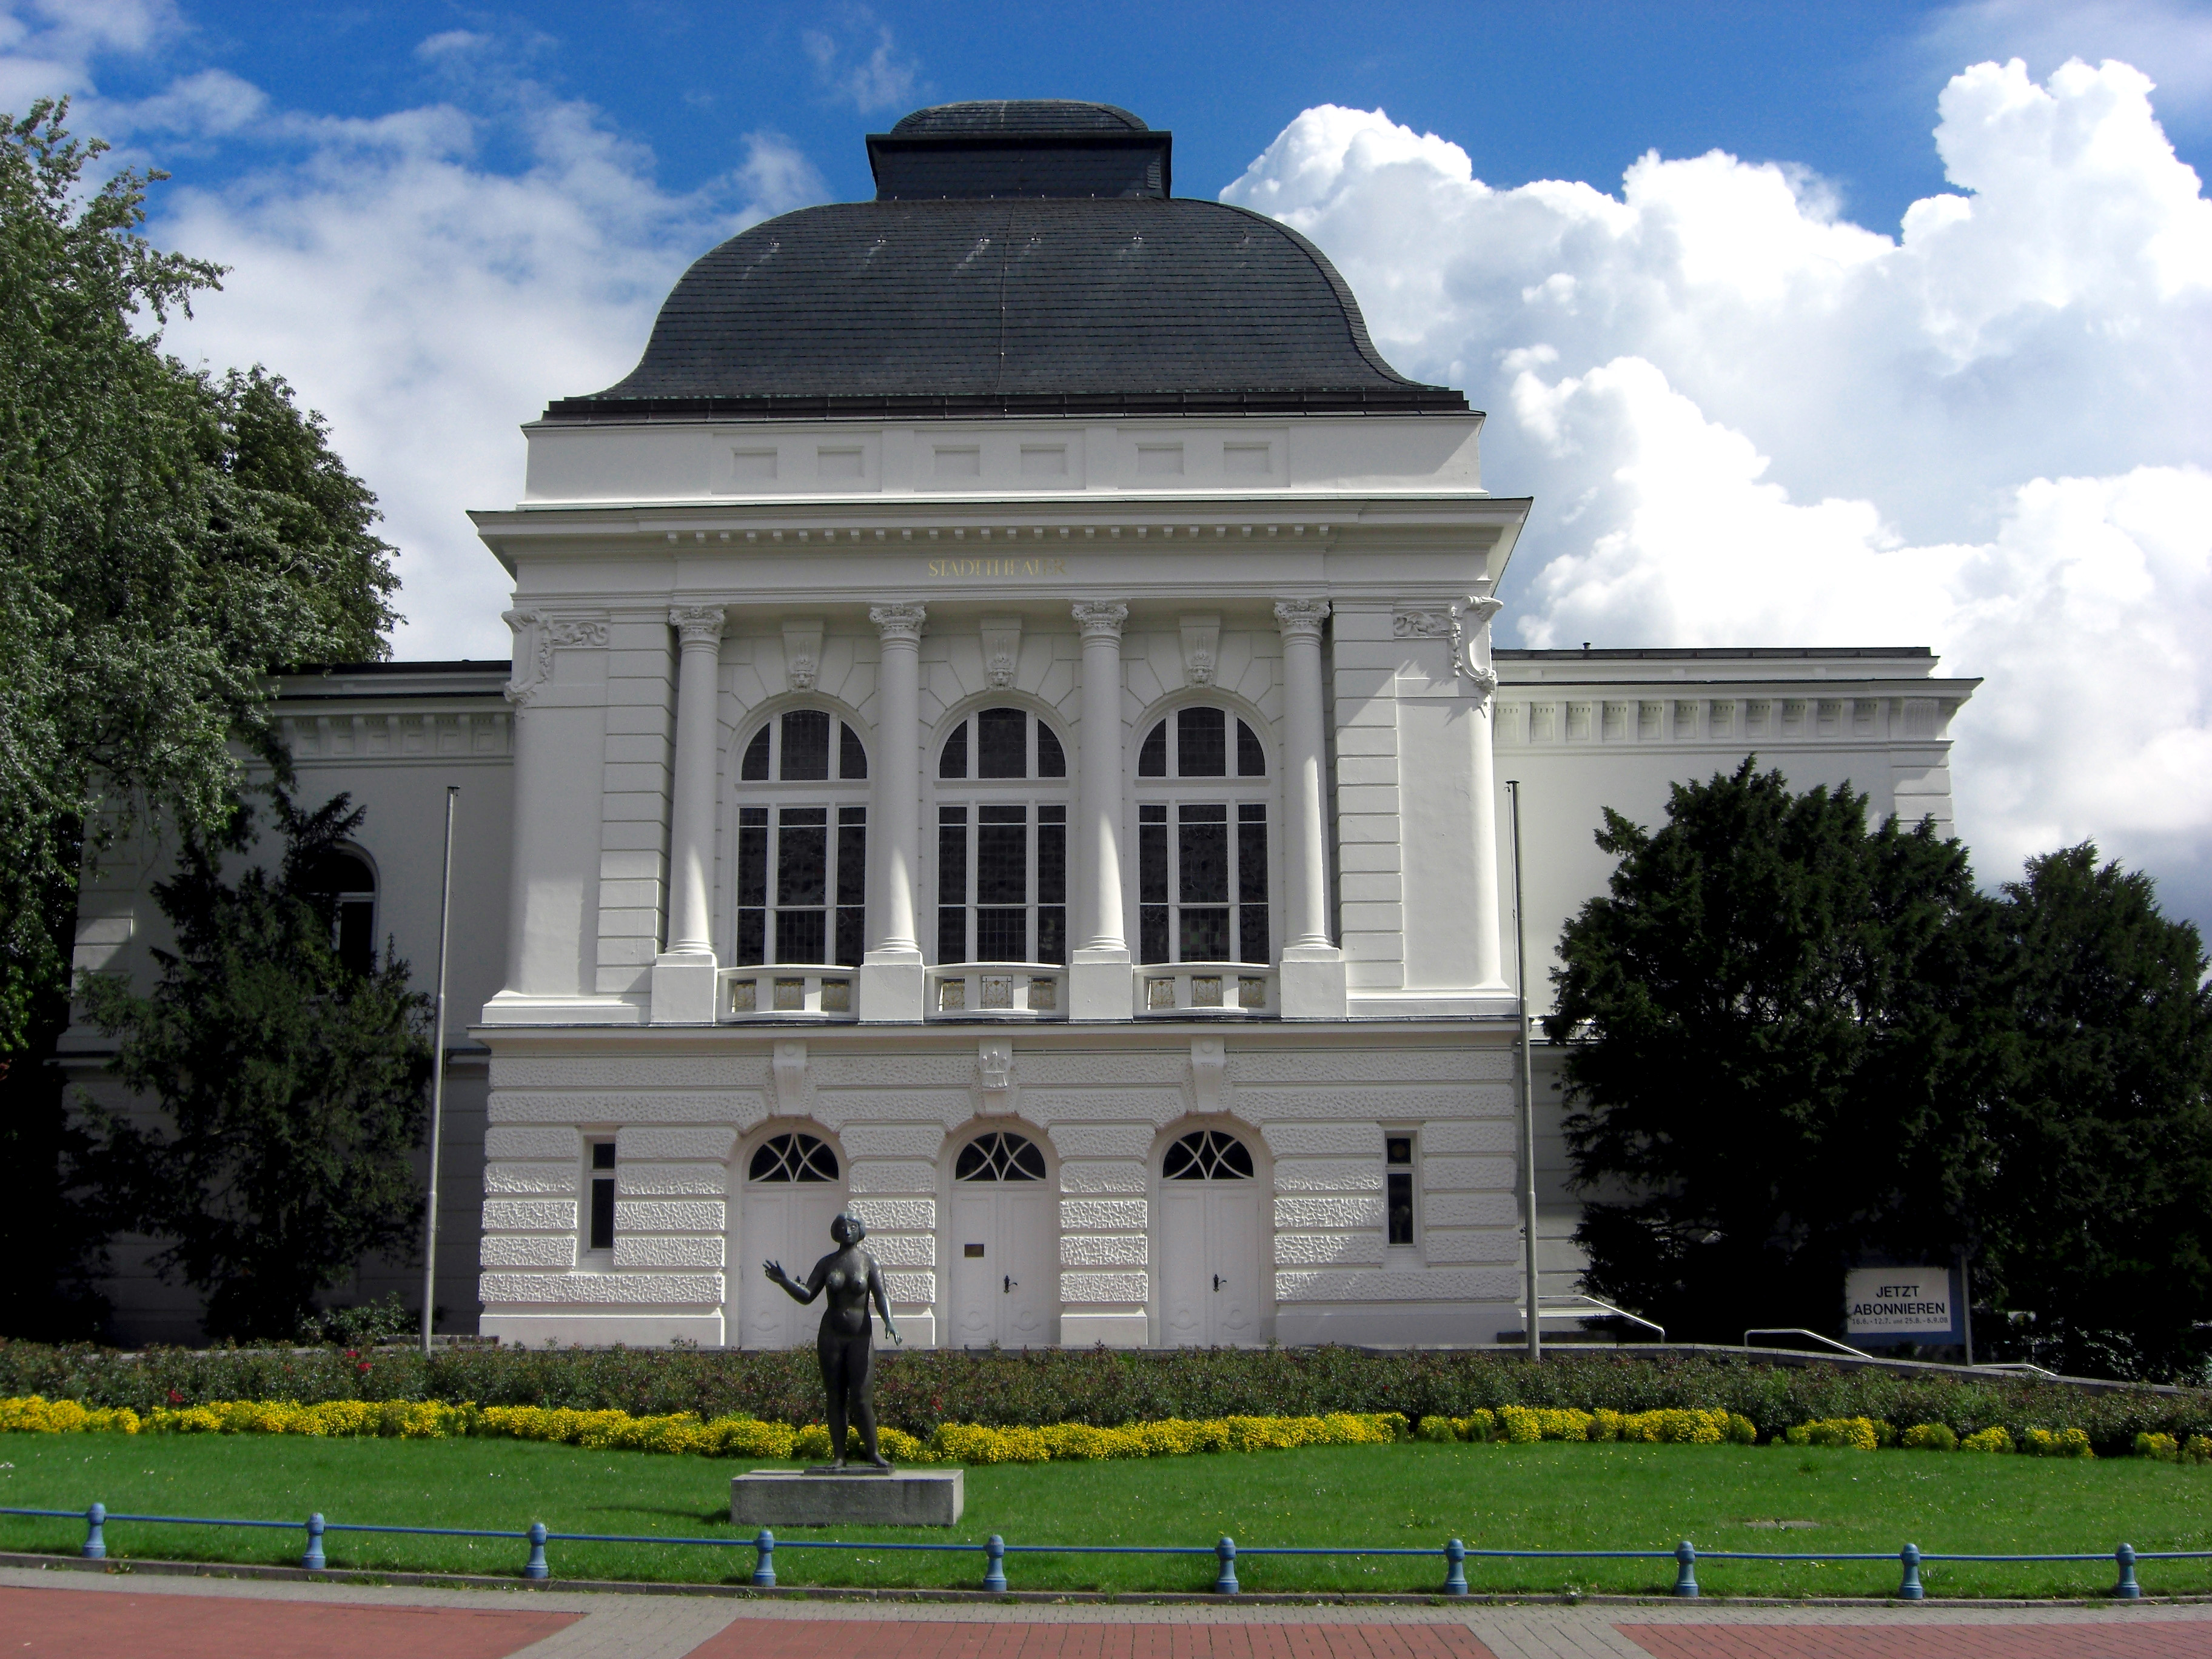 Bild des Stadttheaters Rendsburg von außen, ein großes weißes Gebäude mit weißen Säulen, großen Fenstern und einem dunklem Dach, davor eine grüne Rasenfläche mit Blumen